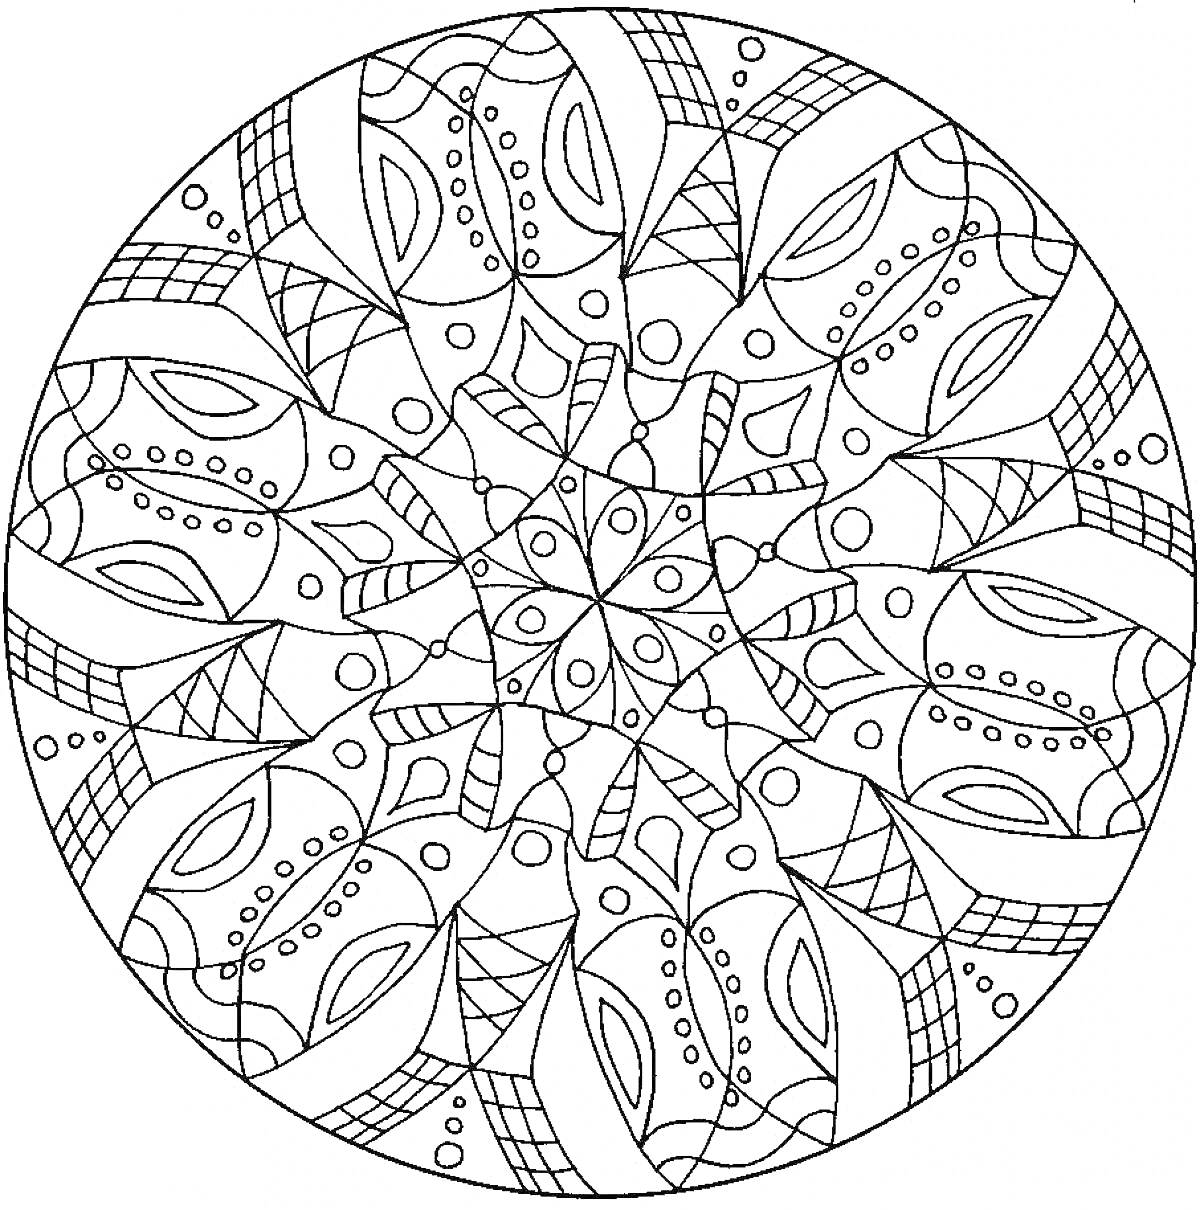 Мандала с геометрическими узорами, включающими линии, точки, дуги и замкнутые петли